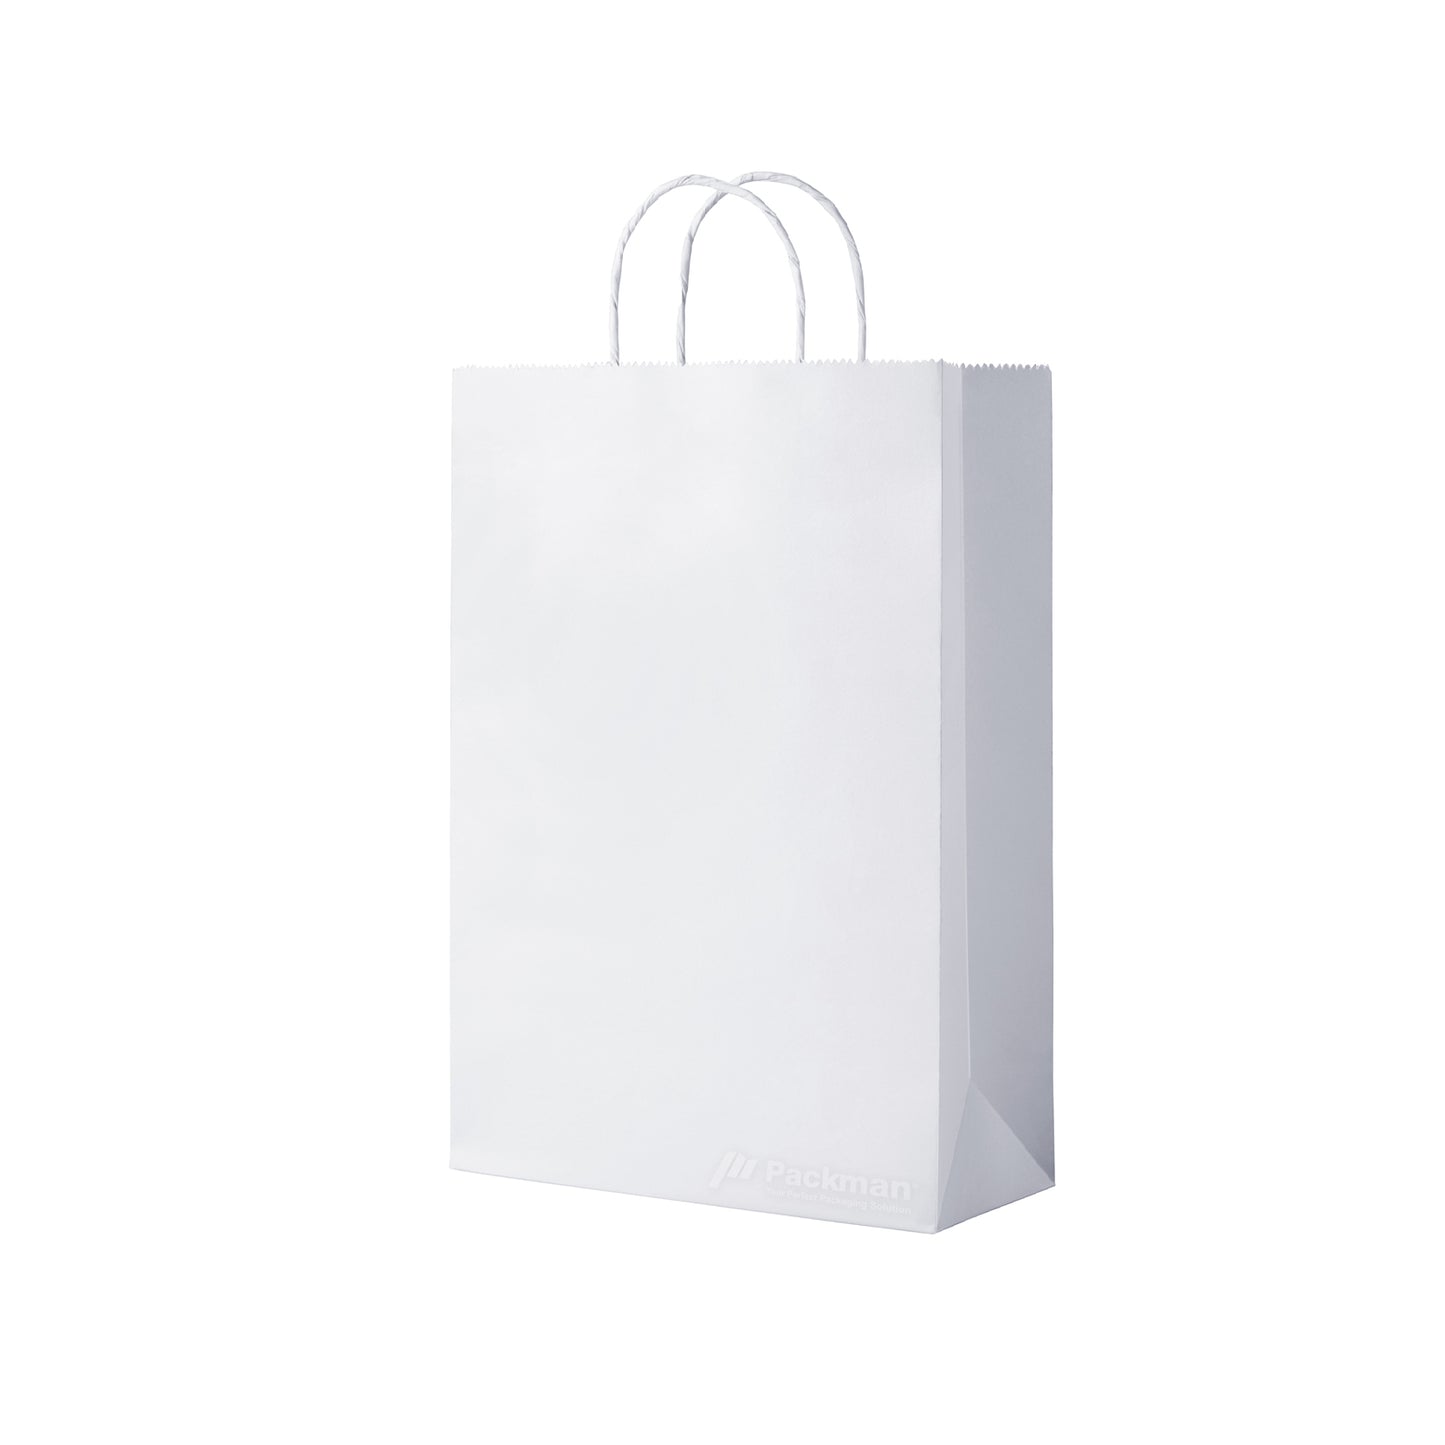 32 x 11 x 40cm White Paper Bag (100pcs)